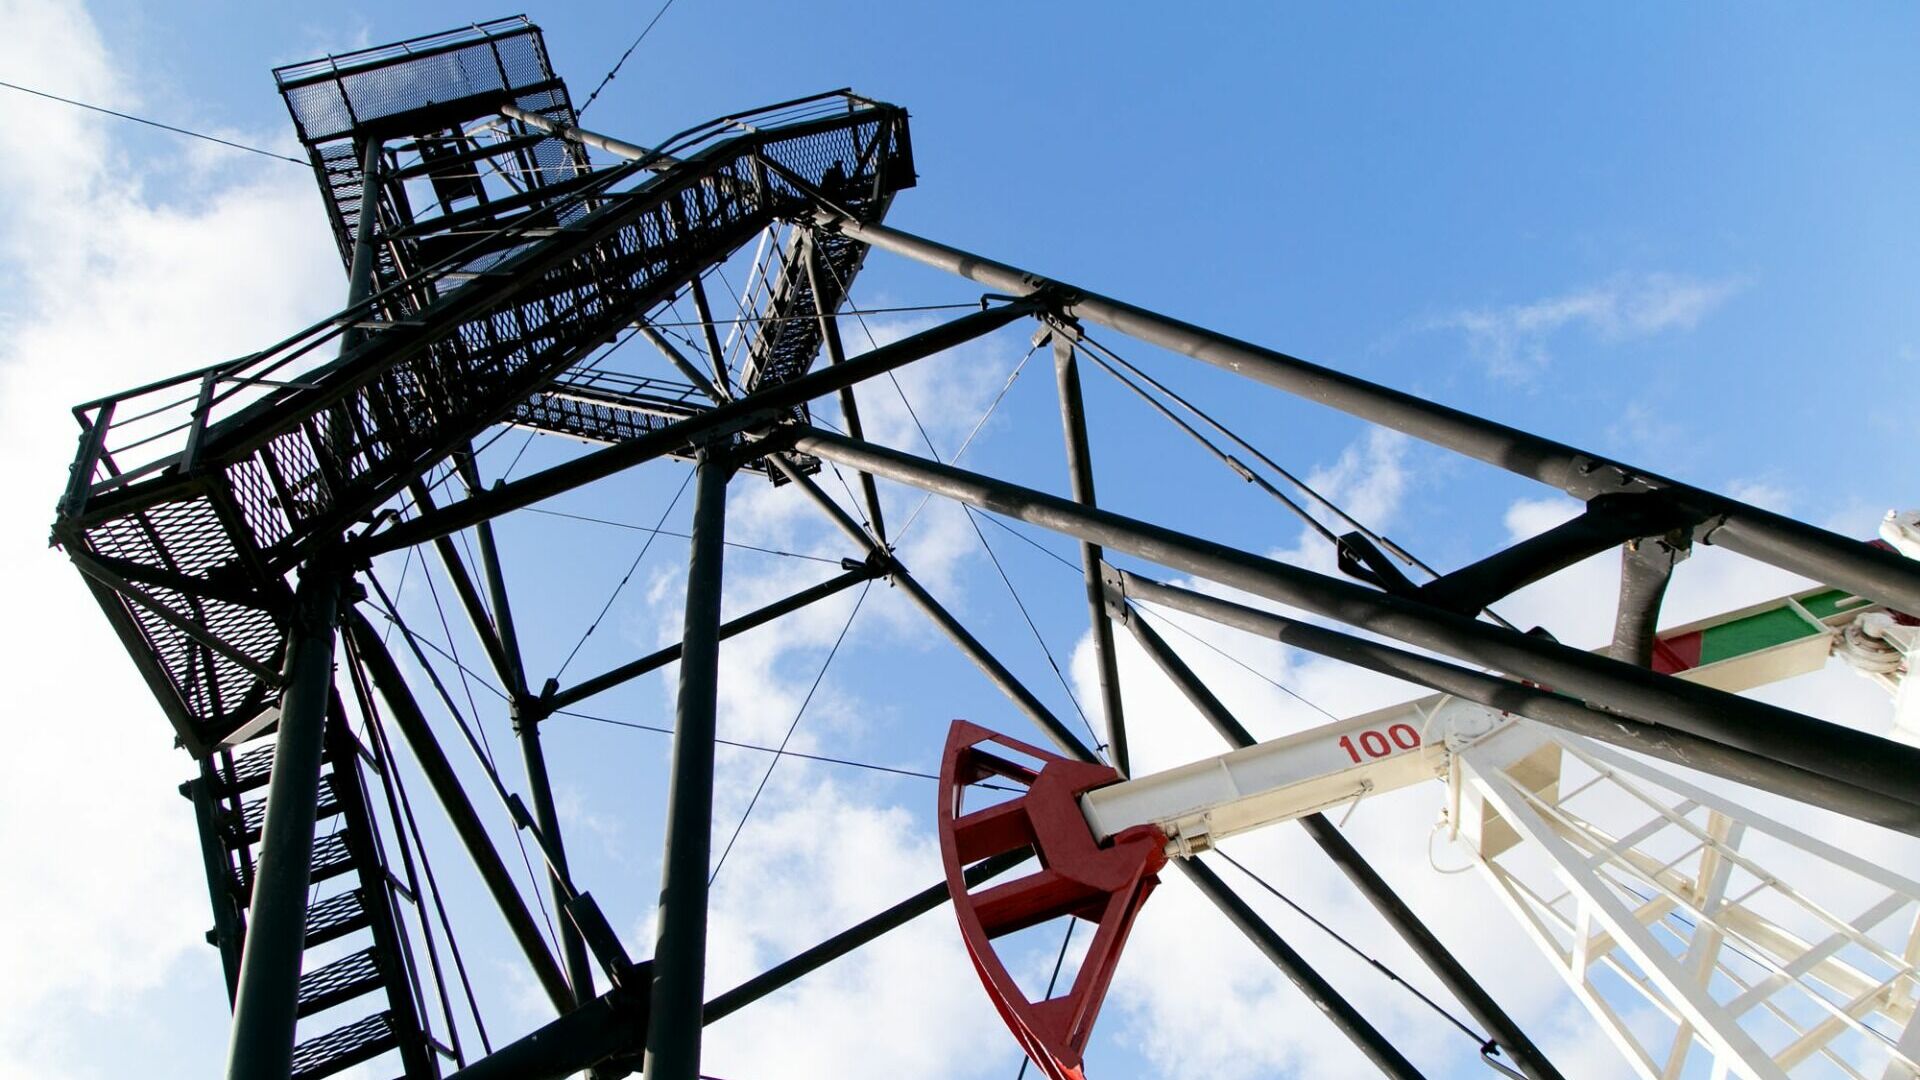 Нефтесервис-банкрот: судебные разбирательства добивают крупнейшее предприятие в ХМАО